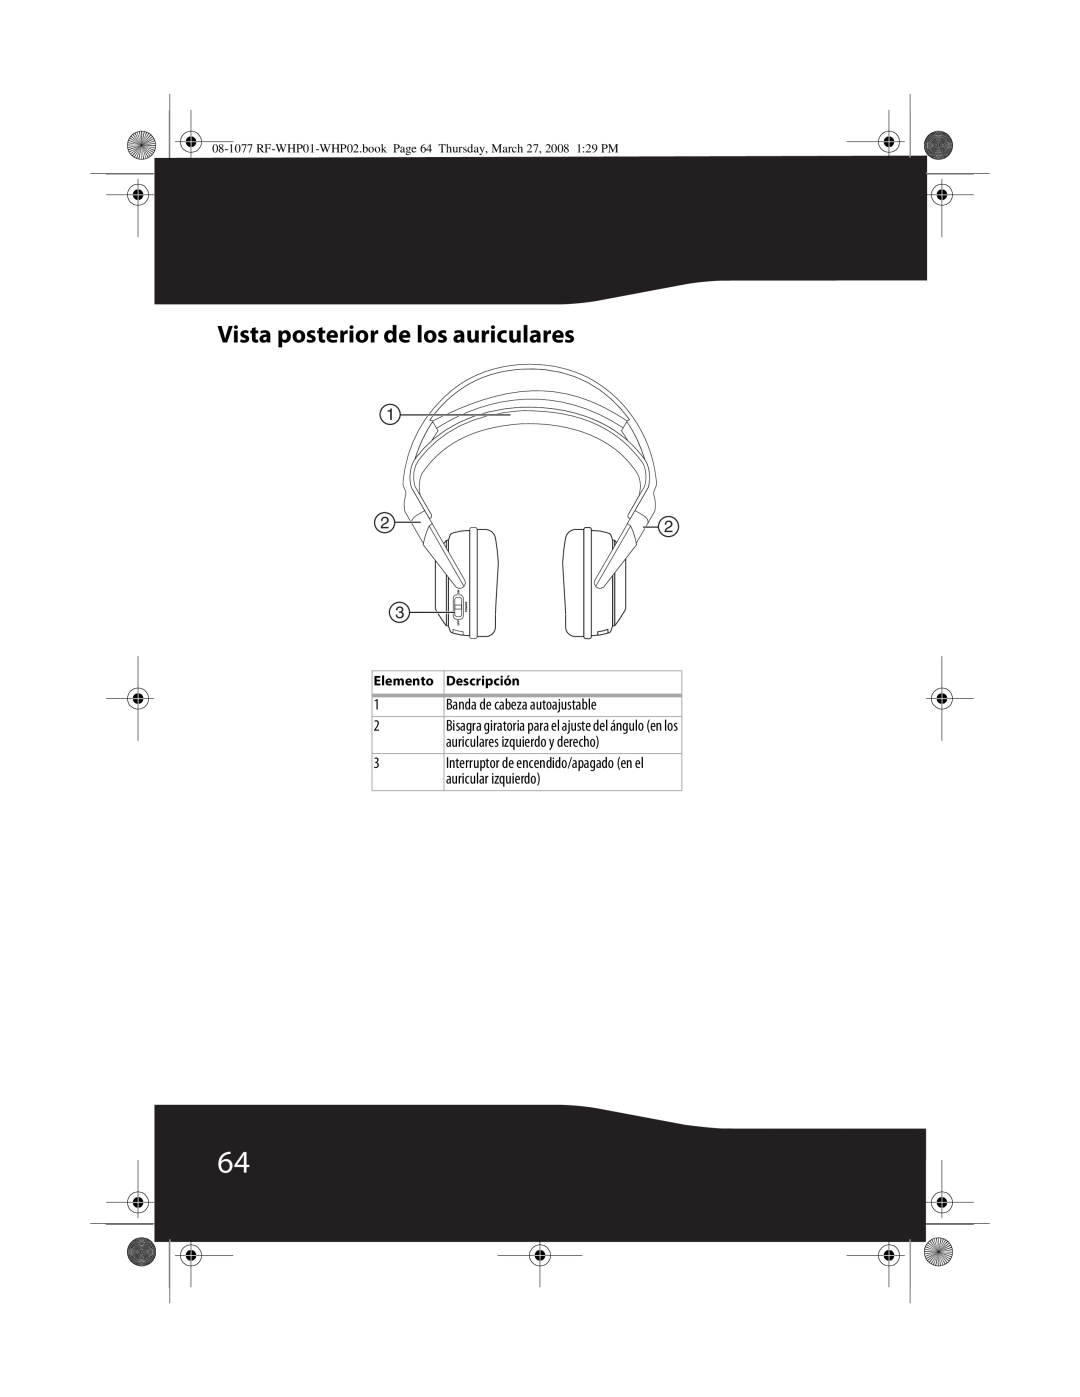 RocketFish RF-WHP01, RF-WHP02 Vista posterior de los auriculares, 1Banda de cabeza autoajustable, Elemento Descripción 